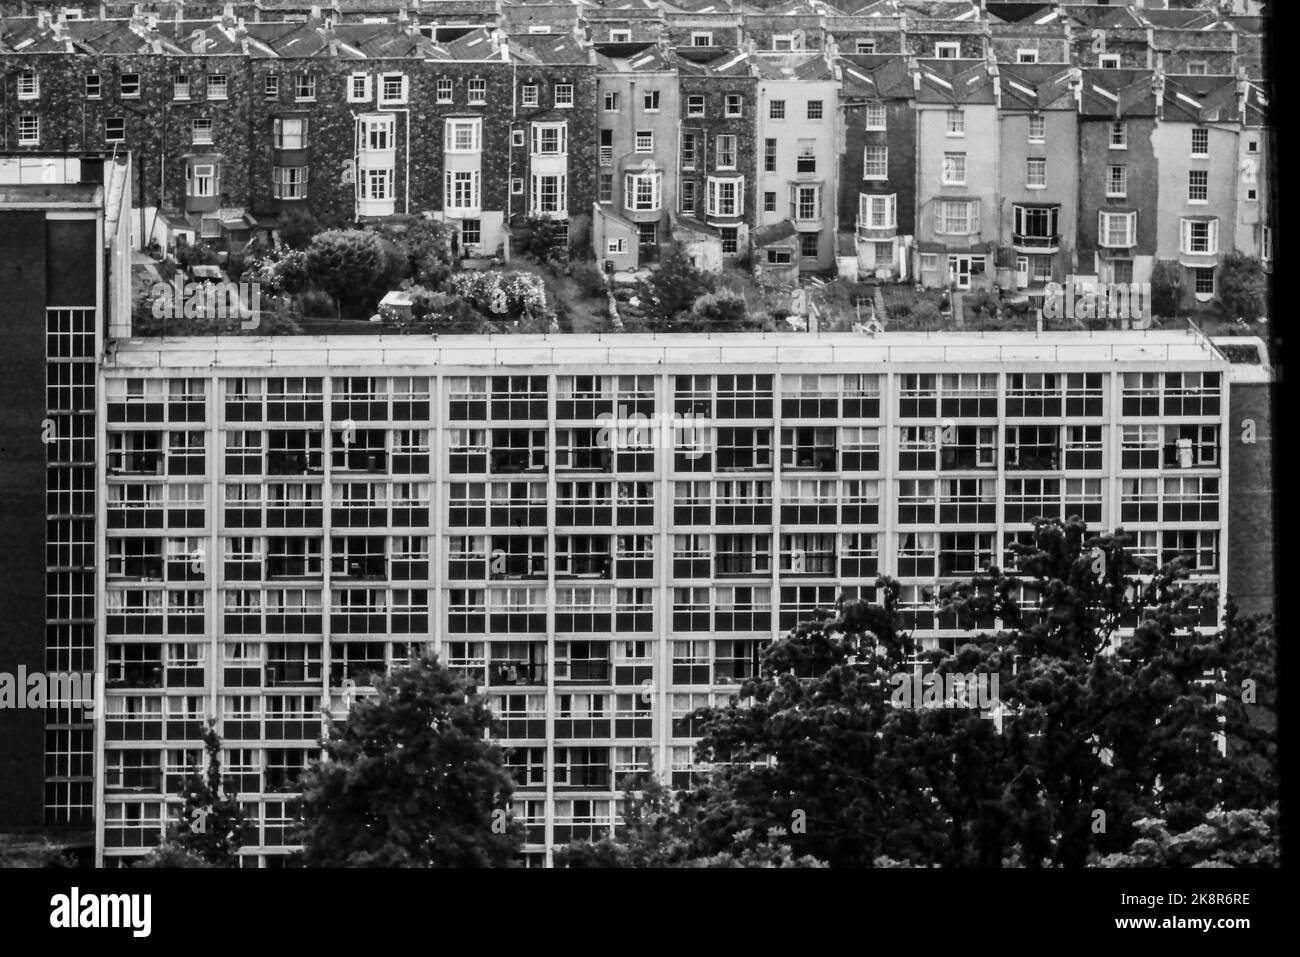 Vista dello skyline di Bristol con edifici nuovi e vecchi fotografati nella metà degli anni '70 in bianco e nero Foto Stock